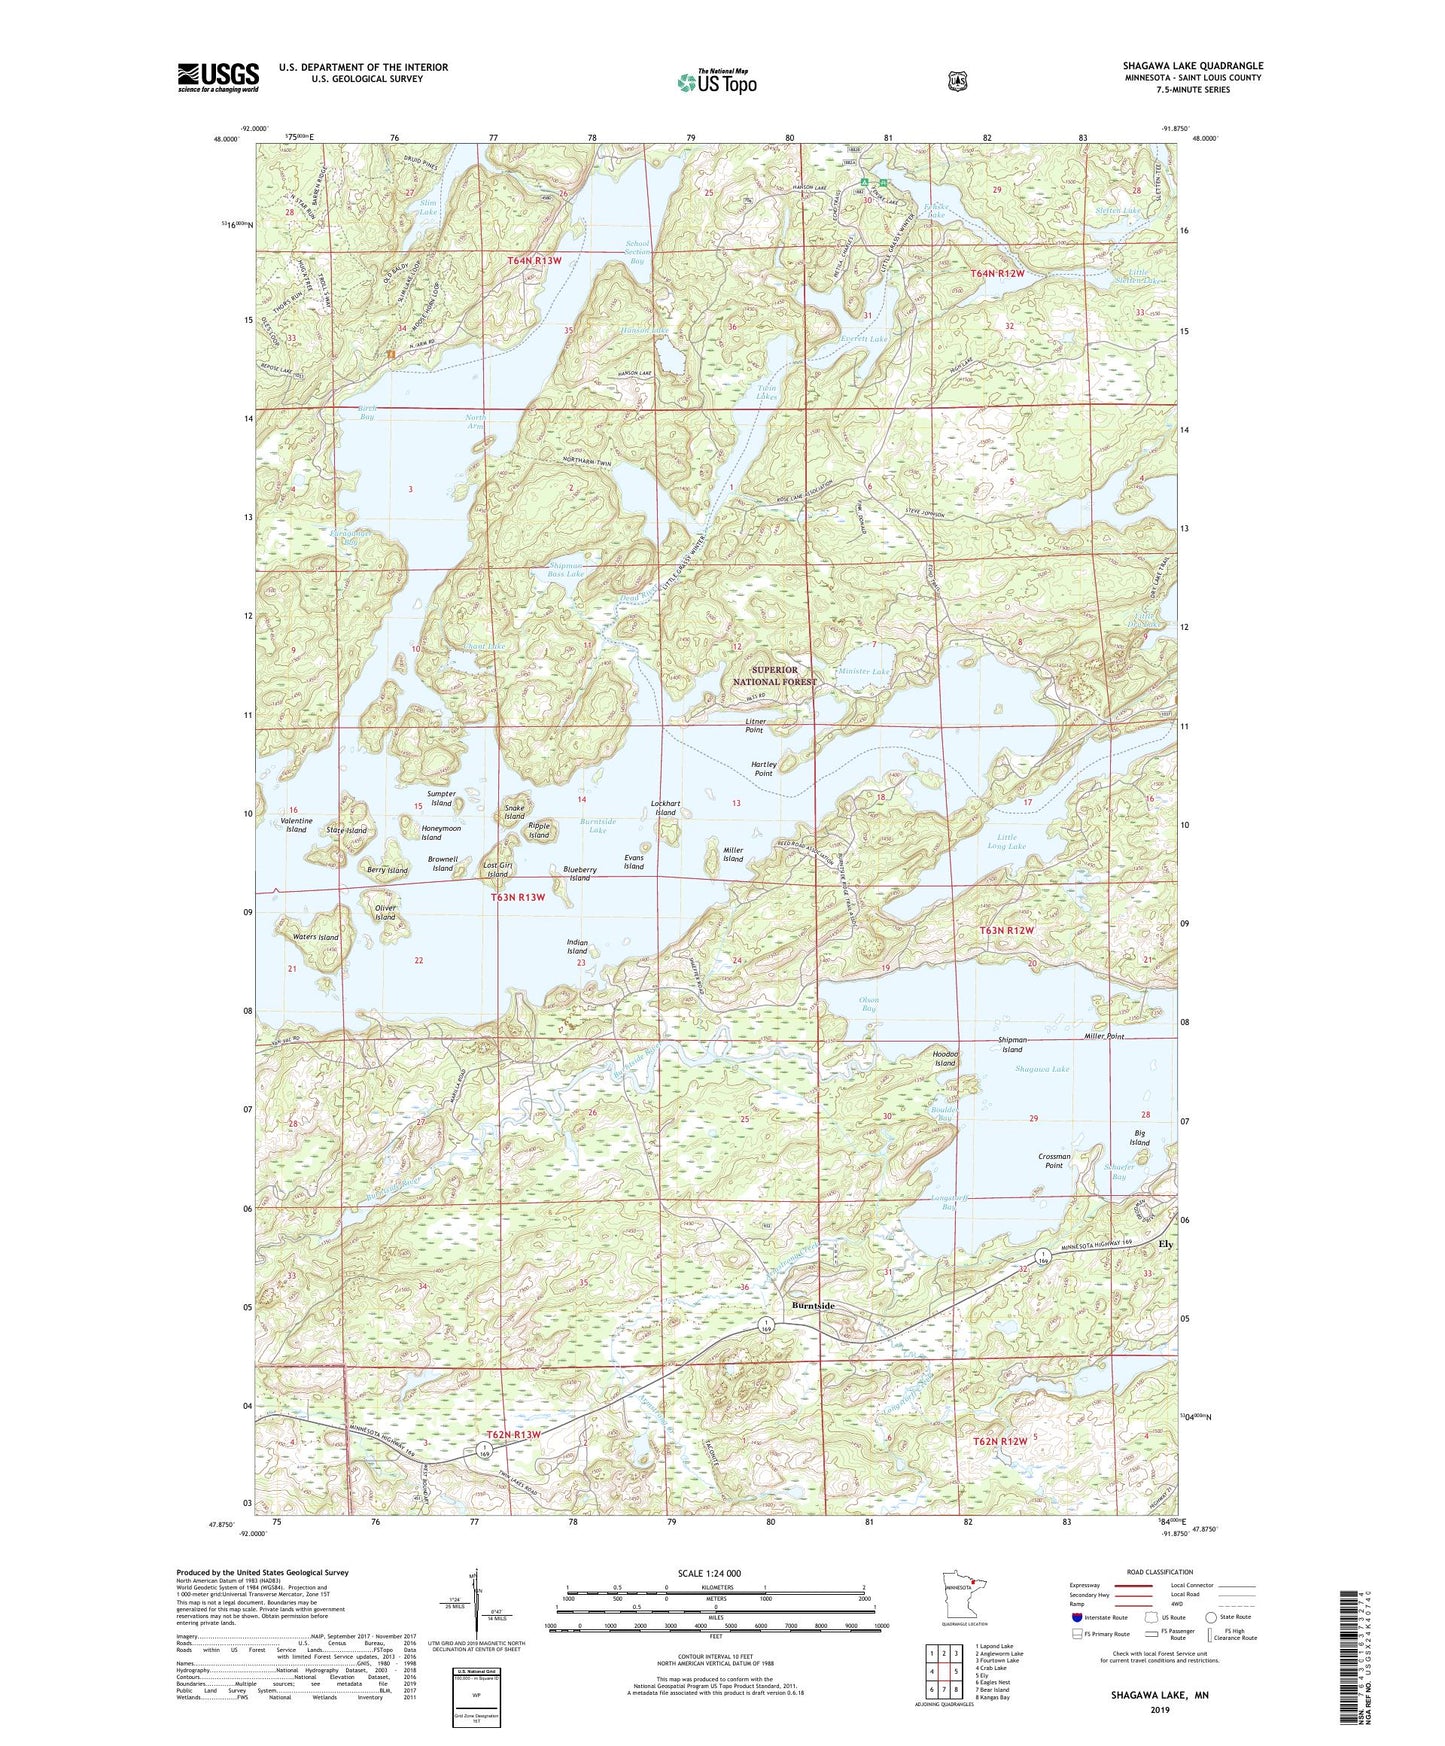 Shagawa Lake Minnesota US Topo Map Image